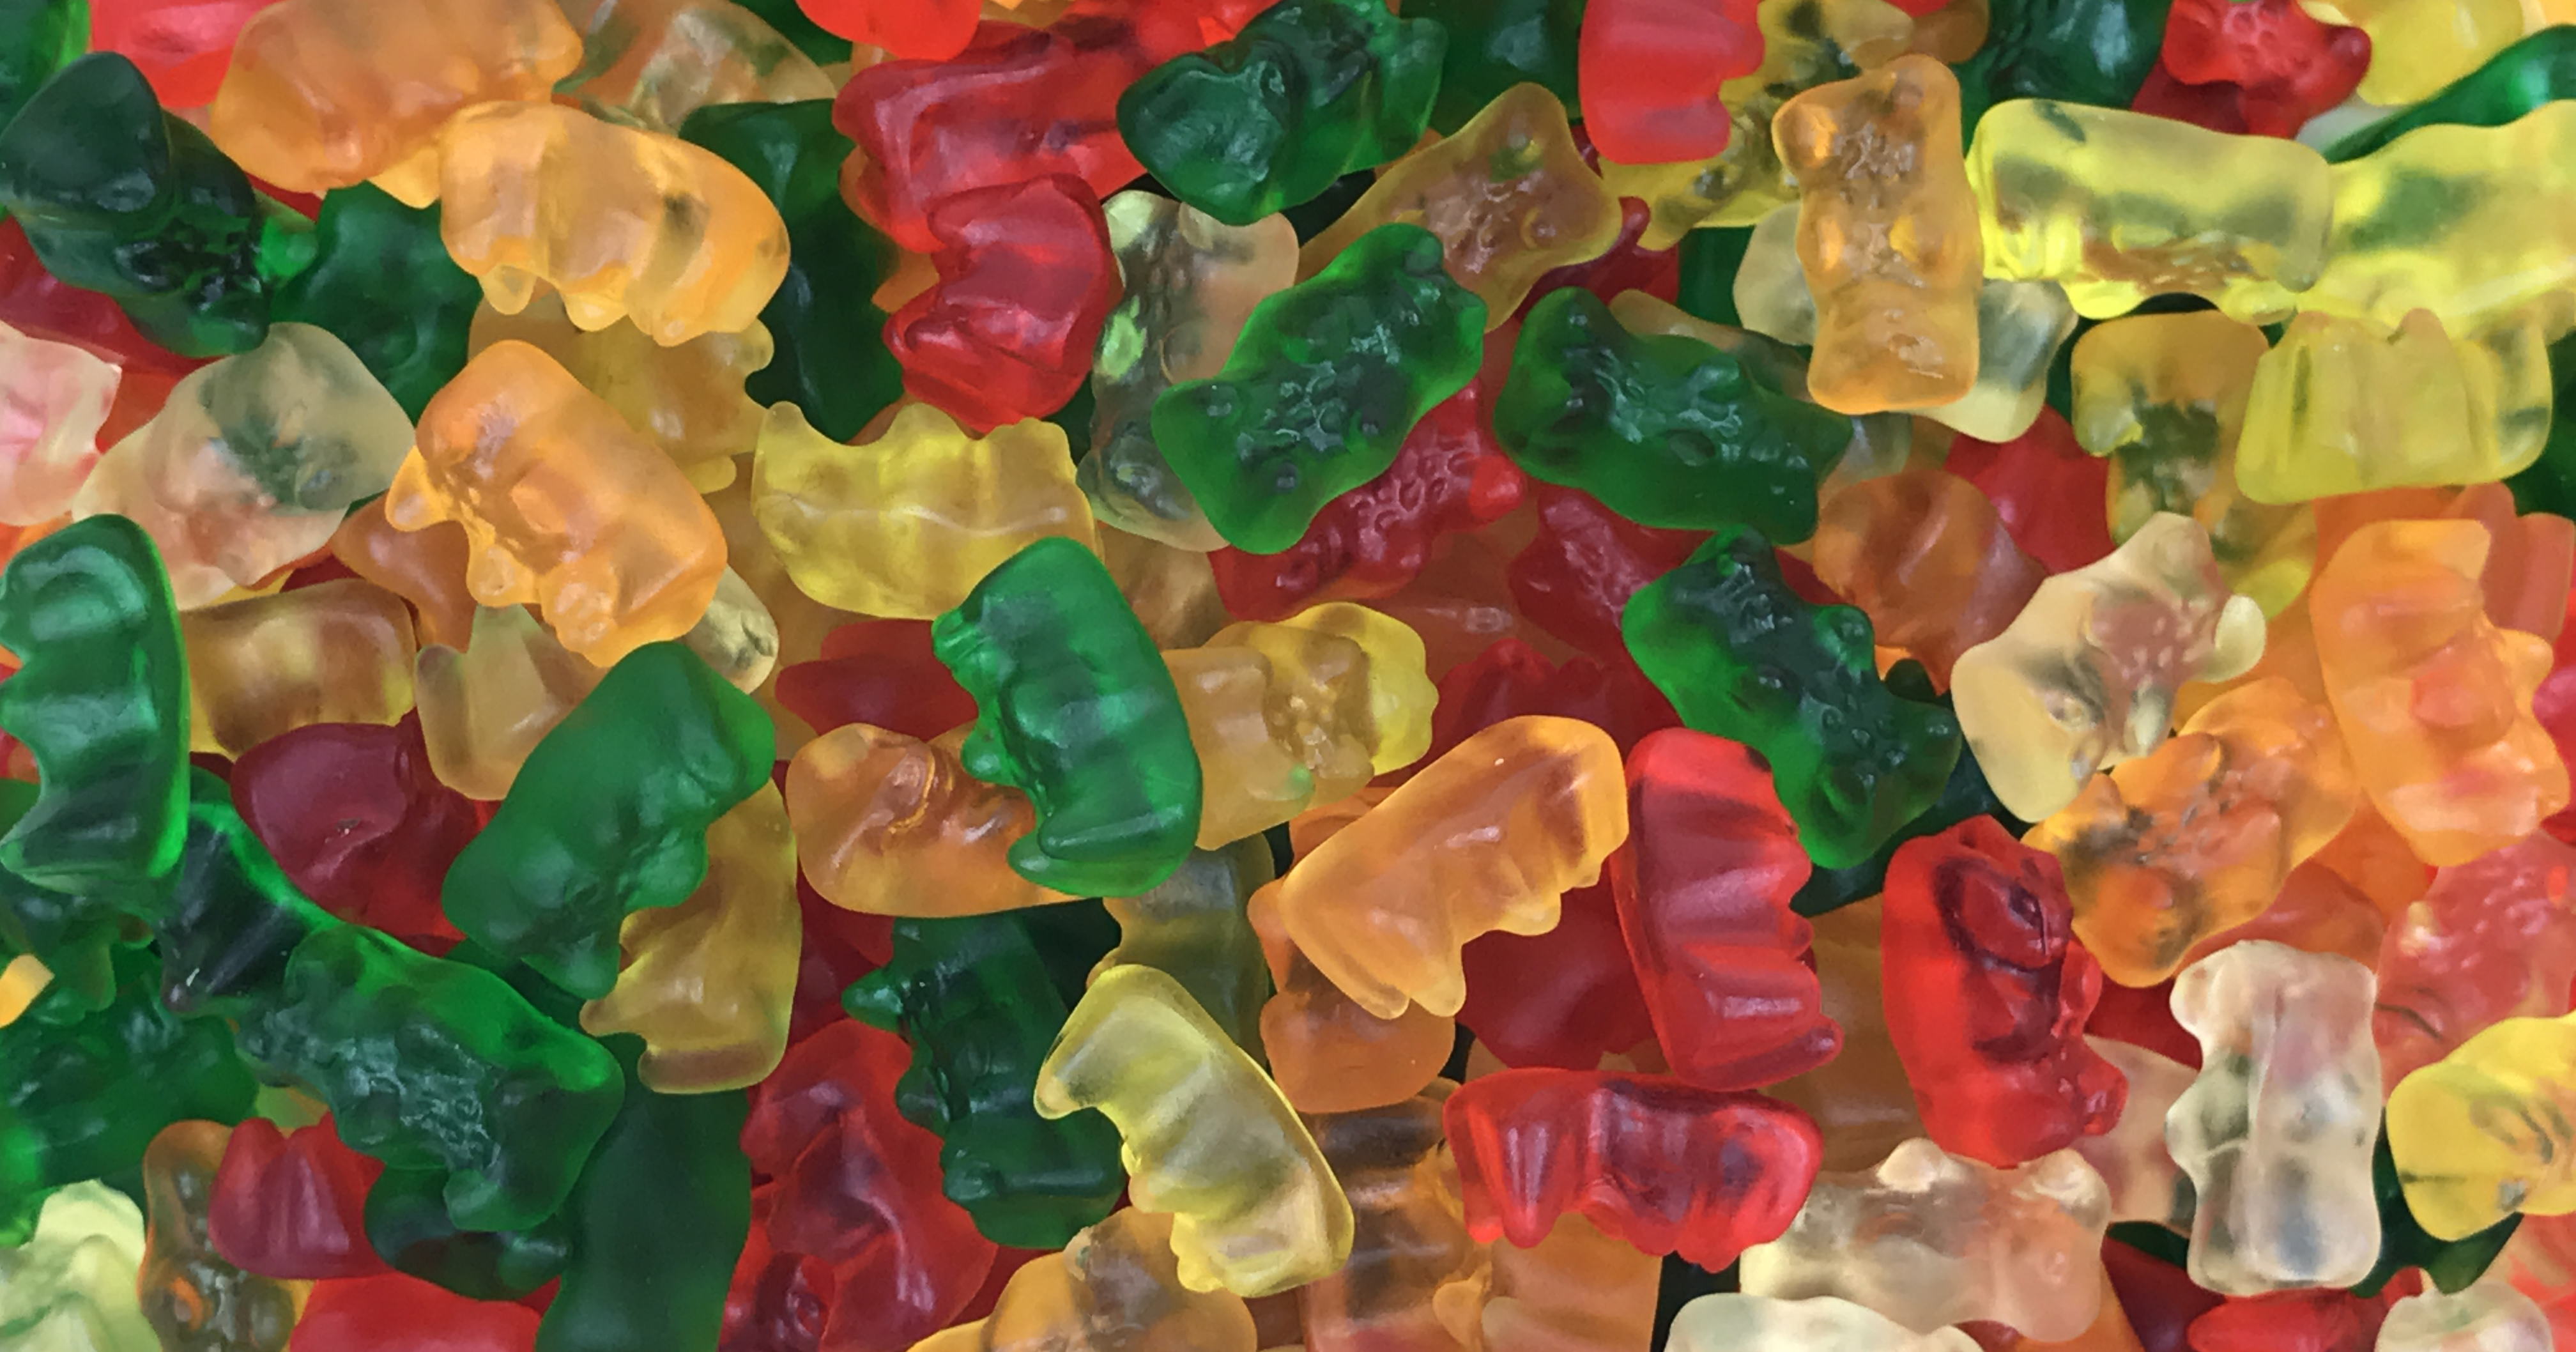 9. Gummy Bear Nail Art Inspiration - wide 2